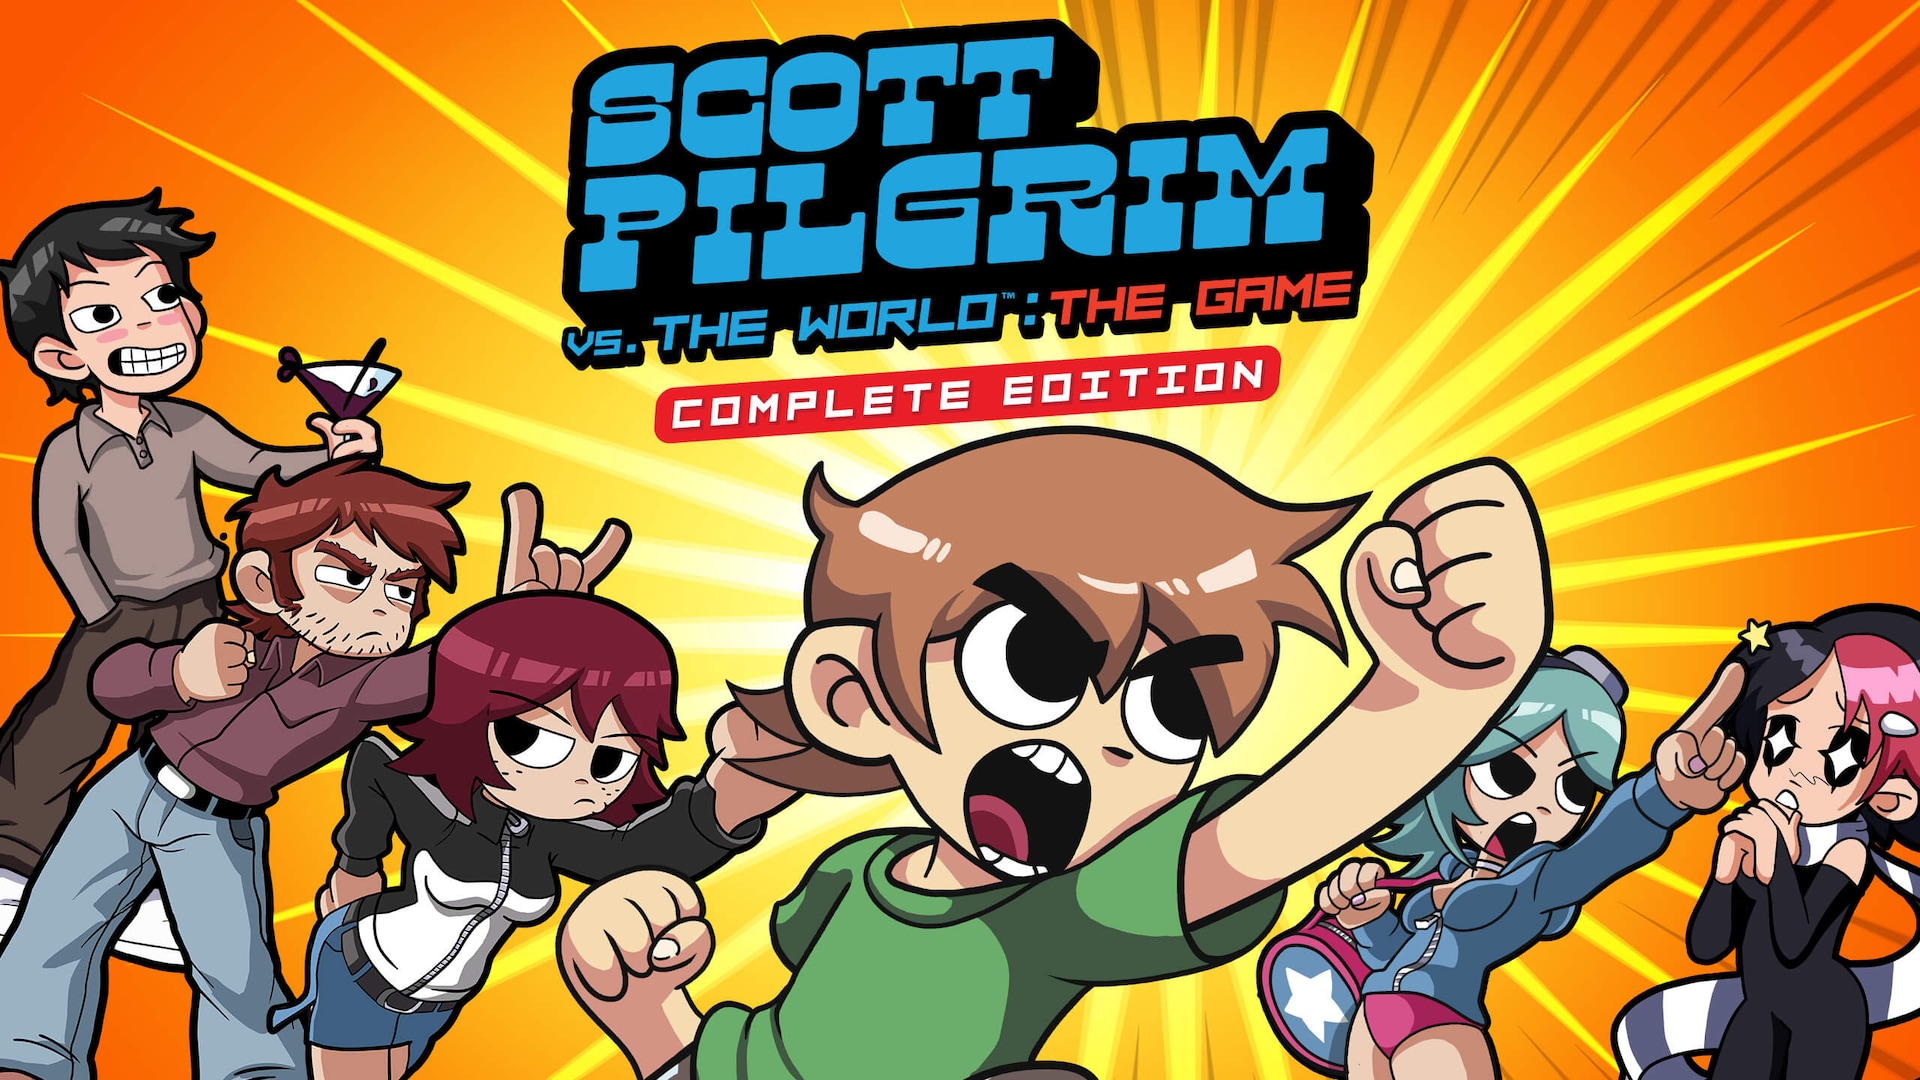 Scott Pilgrim Vs. The World: The Game- Complete Edition disponible a partir del 14 de enero.